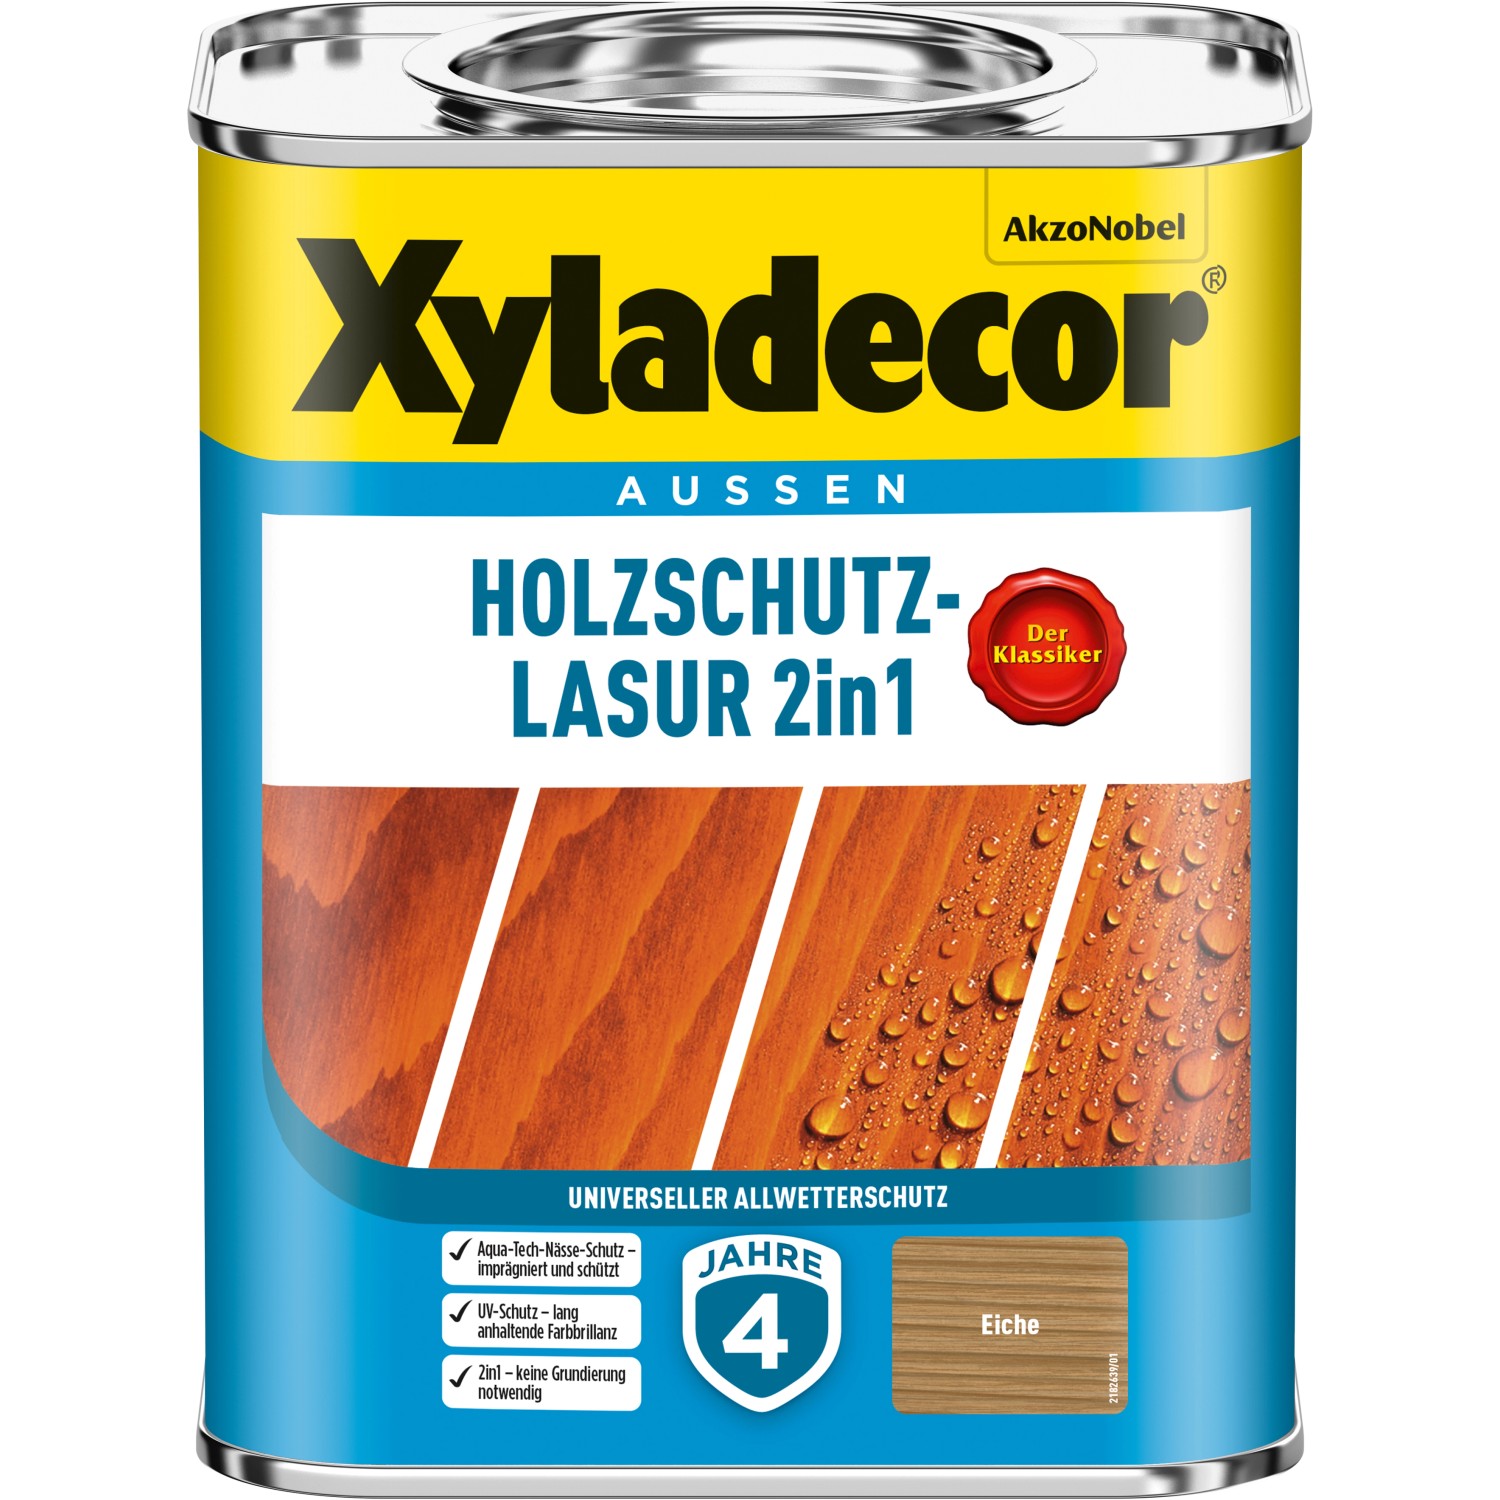 Xyladecor Holzschutz-Lasur 2in1 Eiche matt 750 ml von Xyladecor